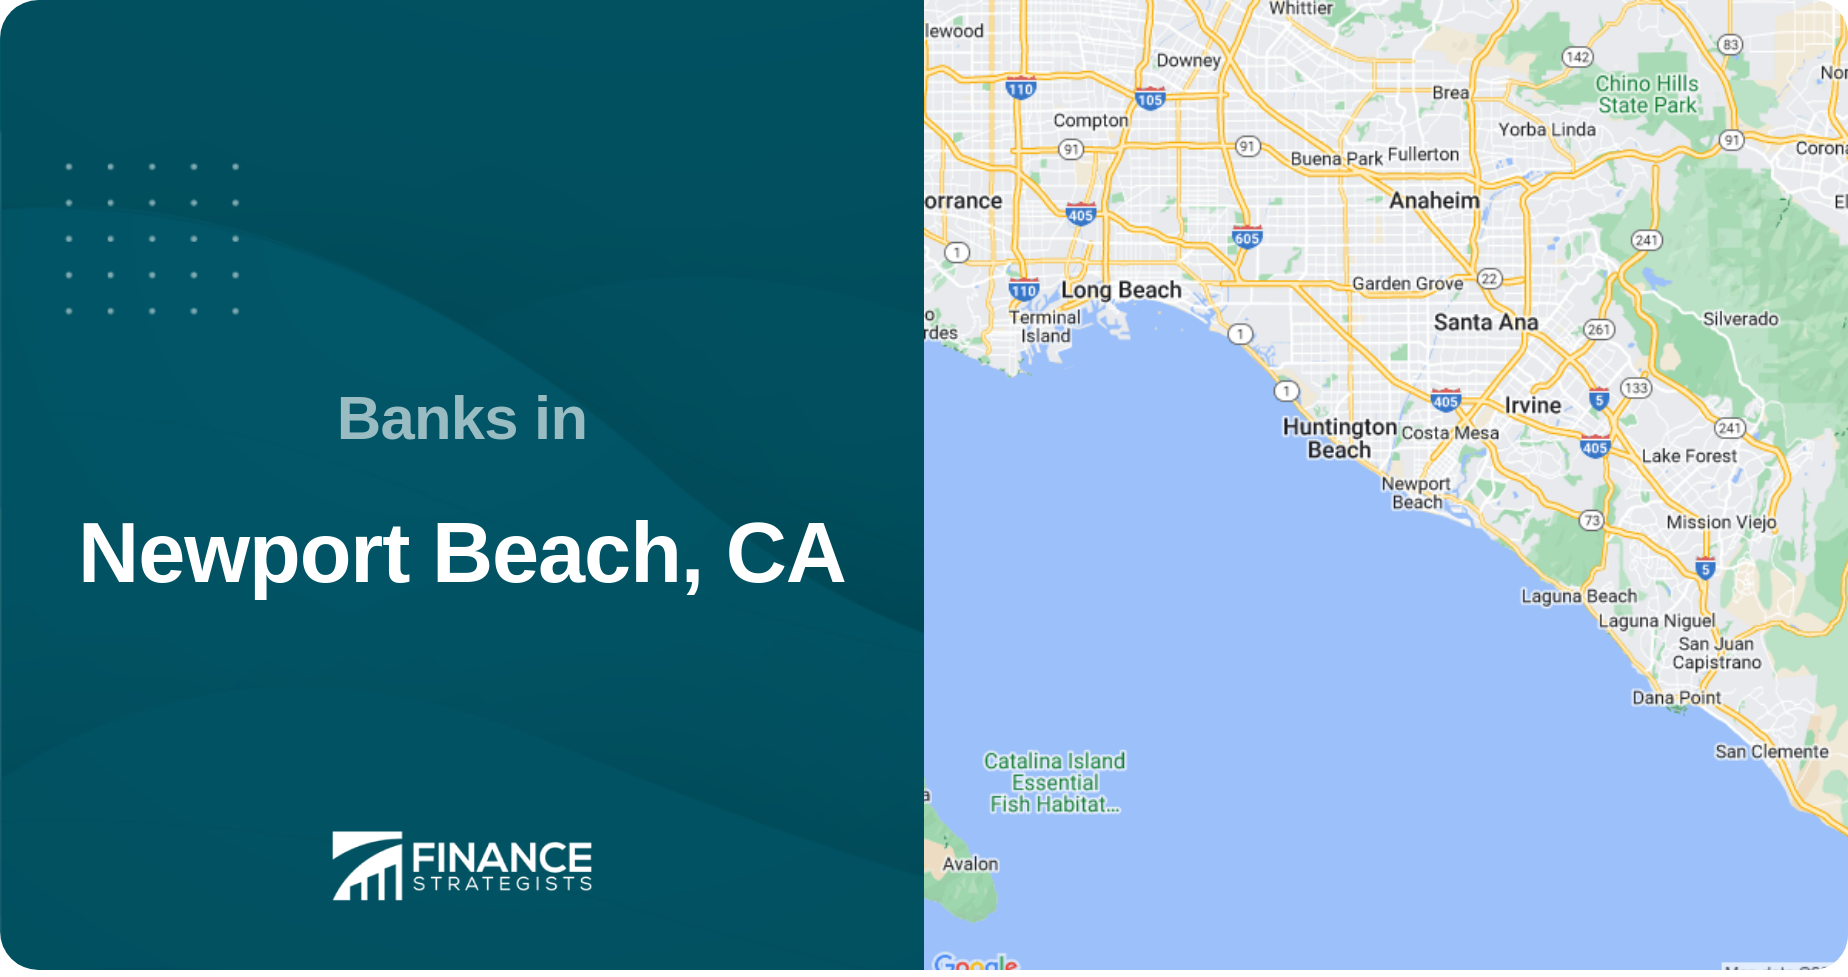 Banks in Newport Beach, CA